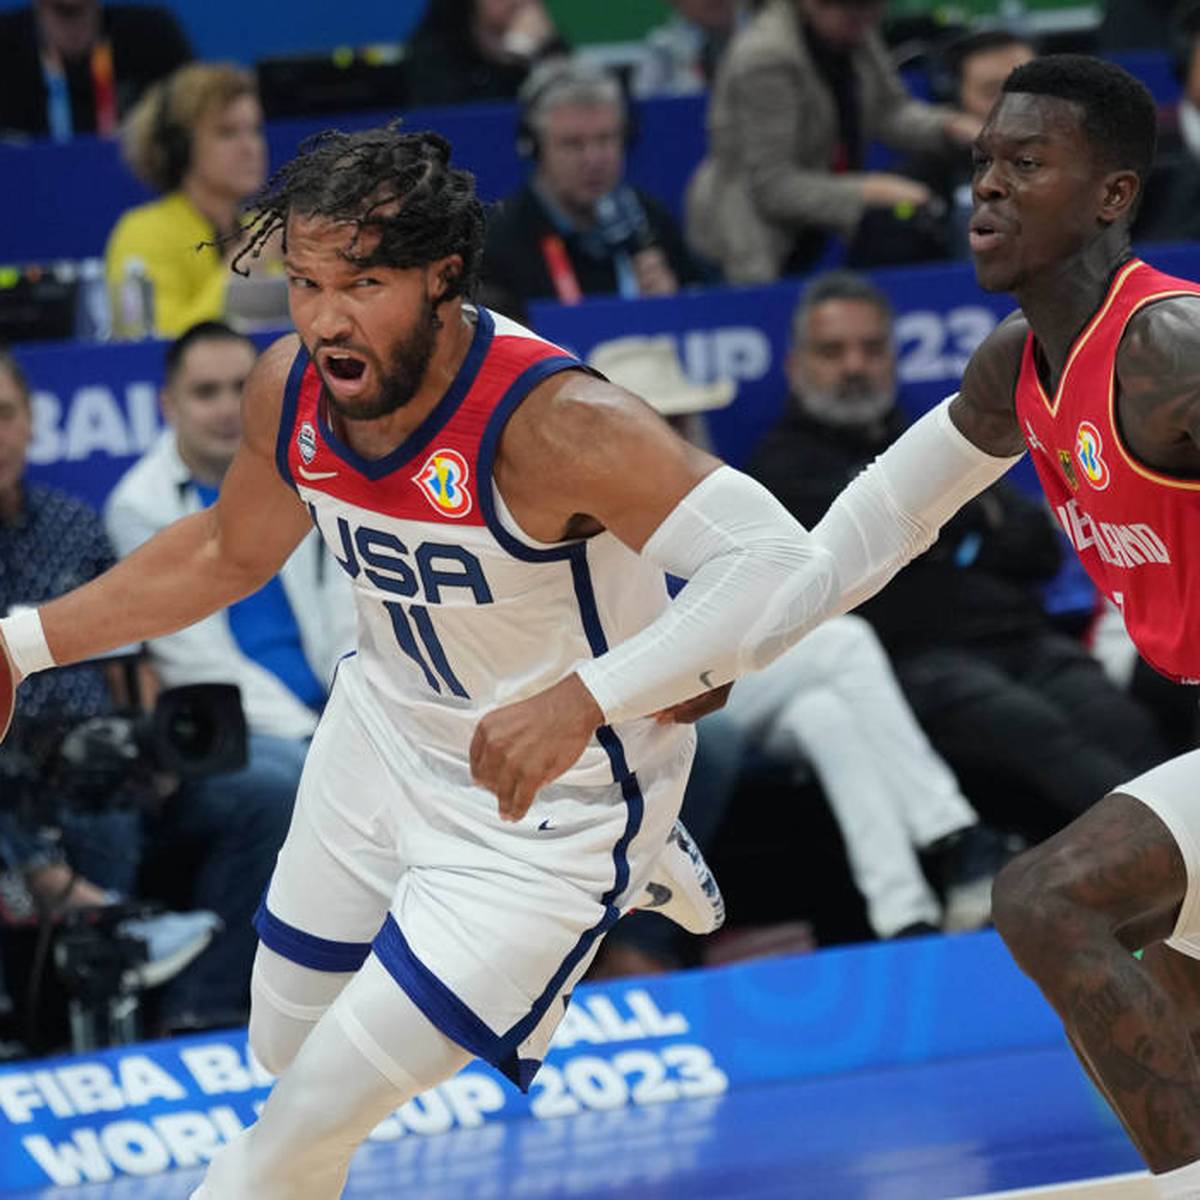 Basketball-WM Deutschland wirft USA raus! US-TV beendet Übertragung abrupt